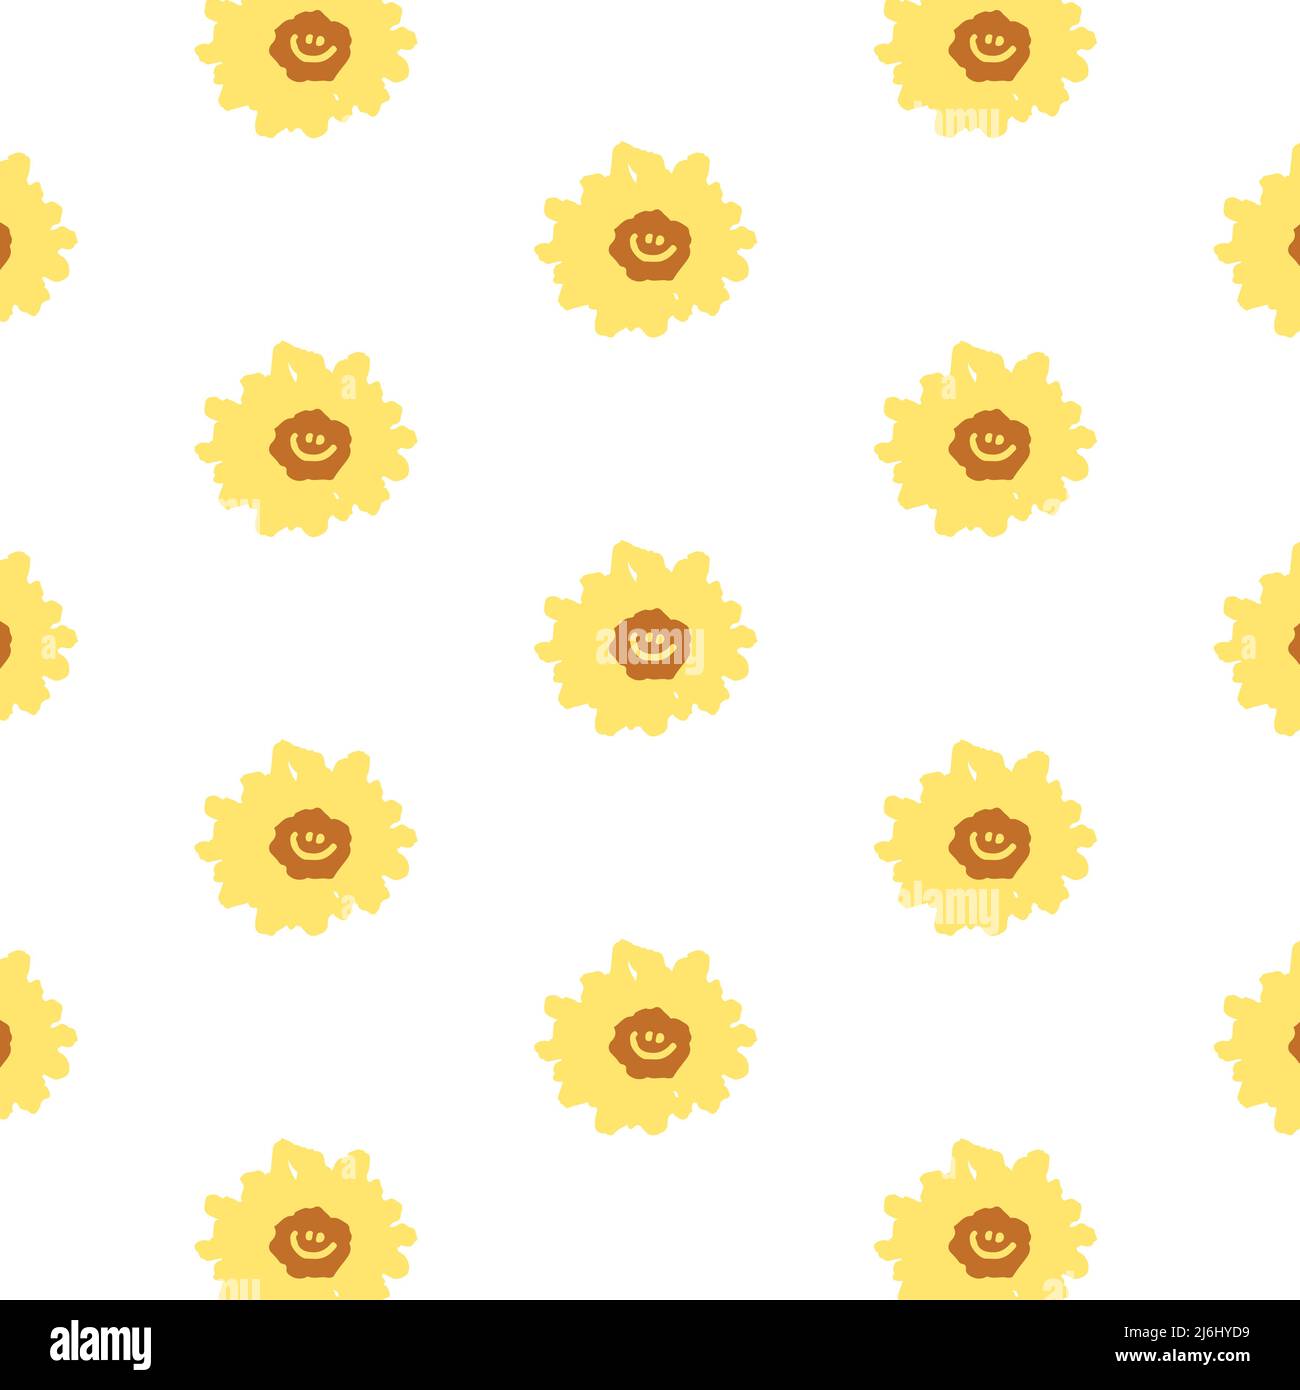 Handgezeichnete Vektor-Illustration von Gänseblümchen mit Smiley-Gesichtsmuster im Cartoon-Stil. Muster für Textil, Stoff, Geschenkpapier. Stock Vektor